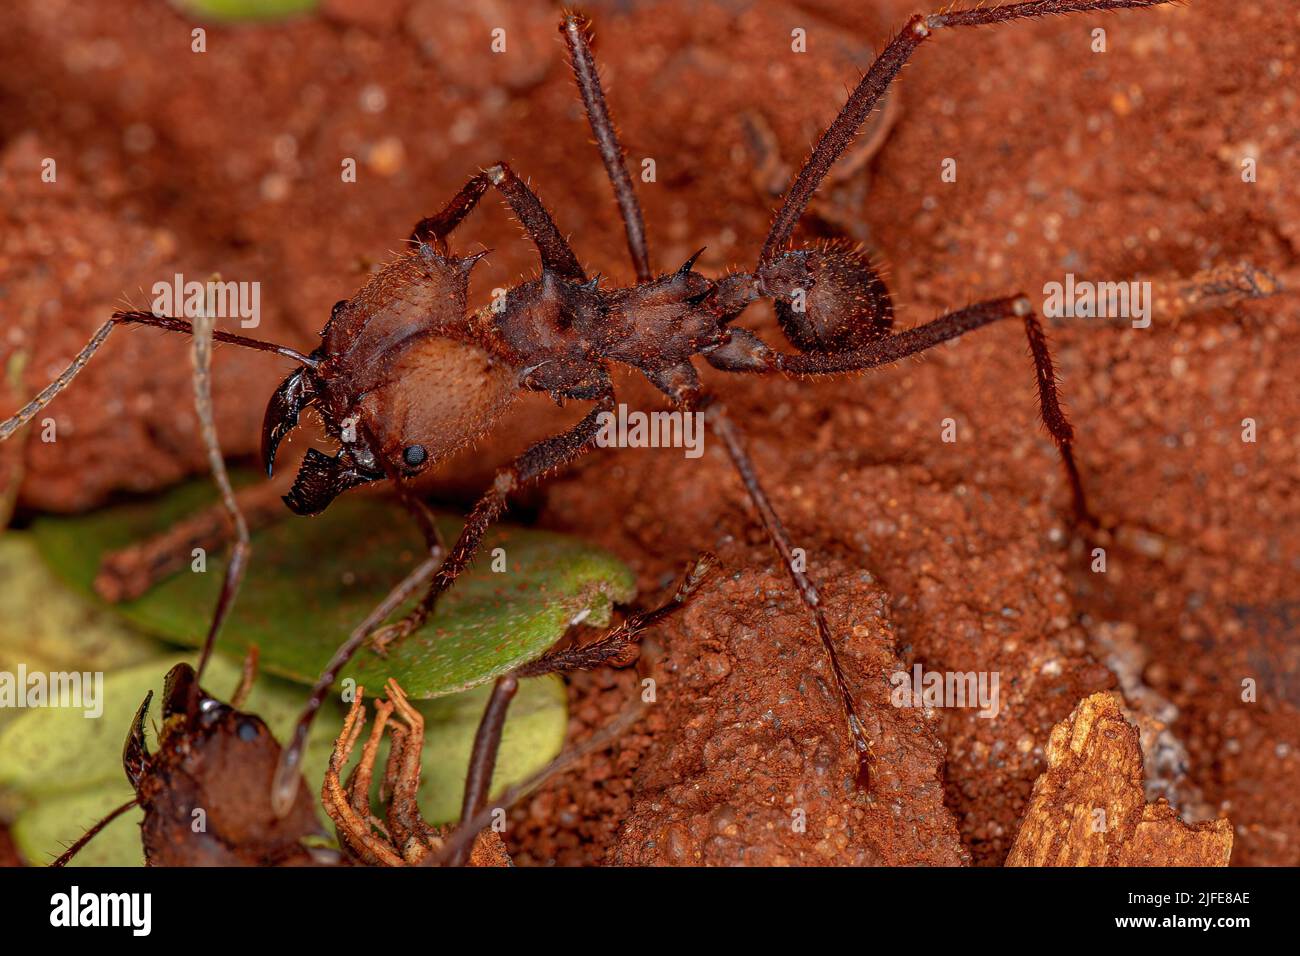 Adulto Atta Leaf-cutter Ant del género Atta Foto de stock